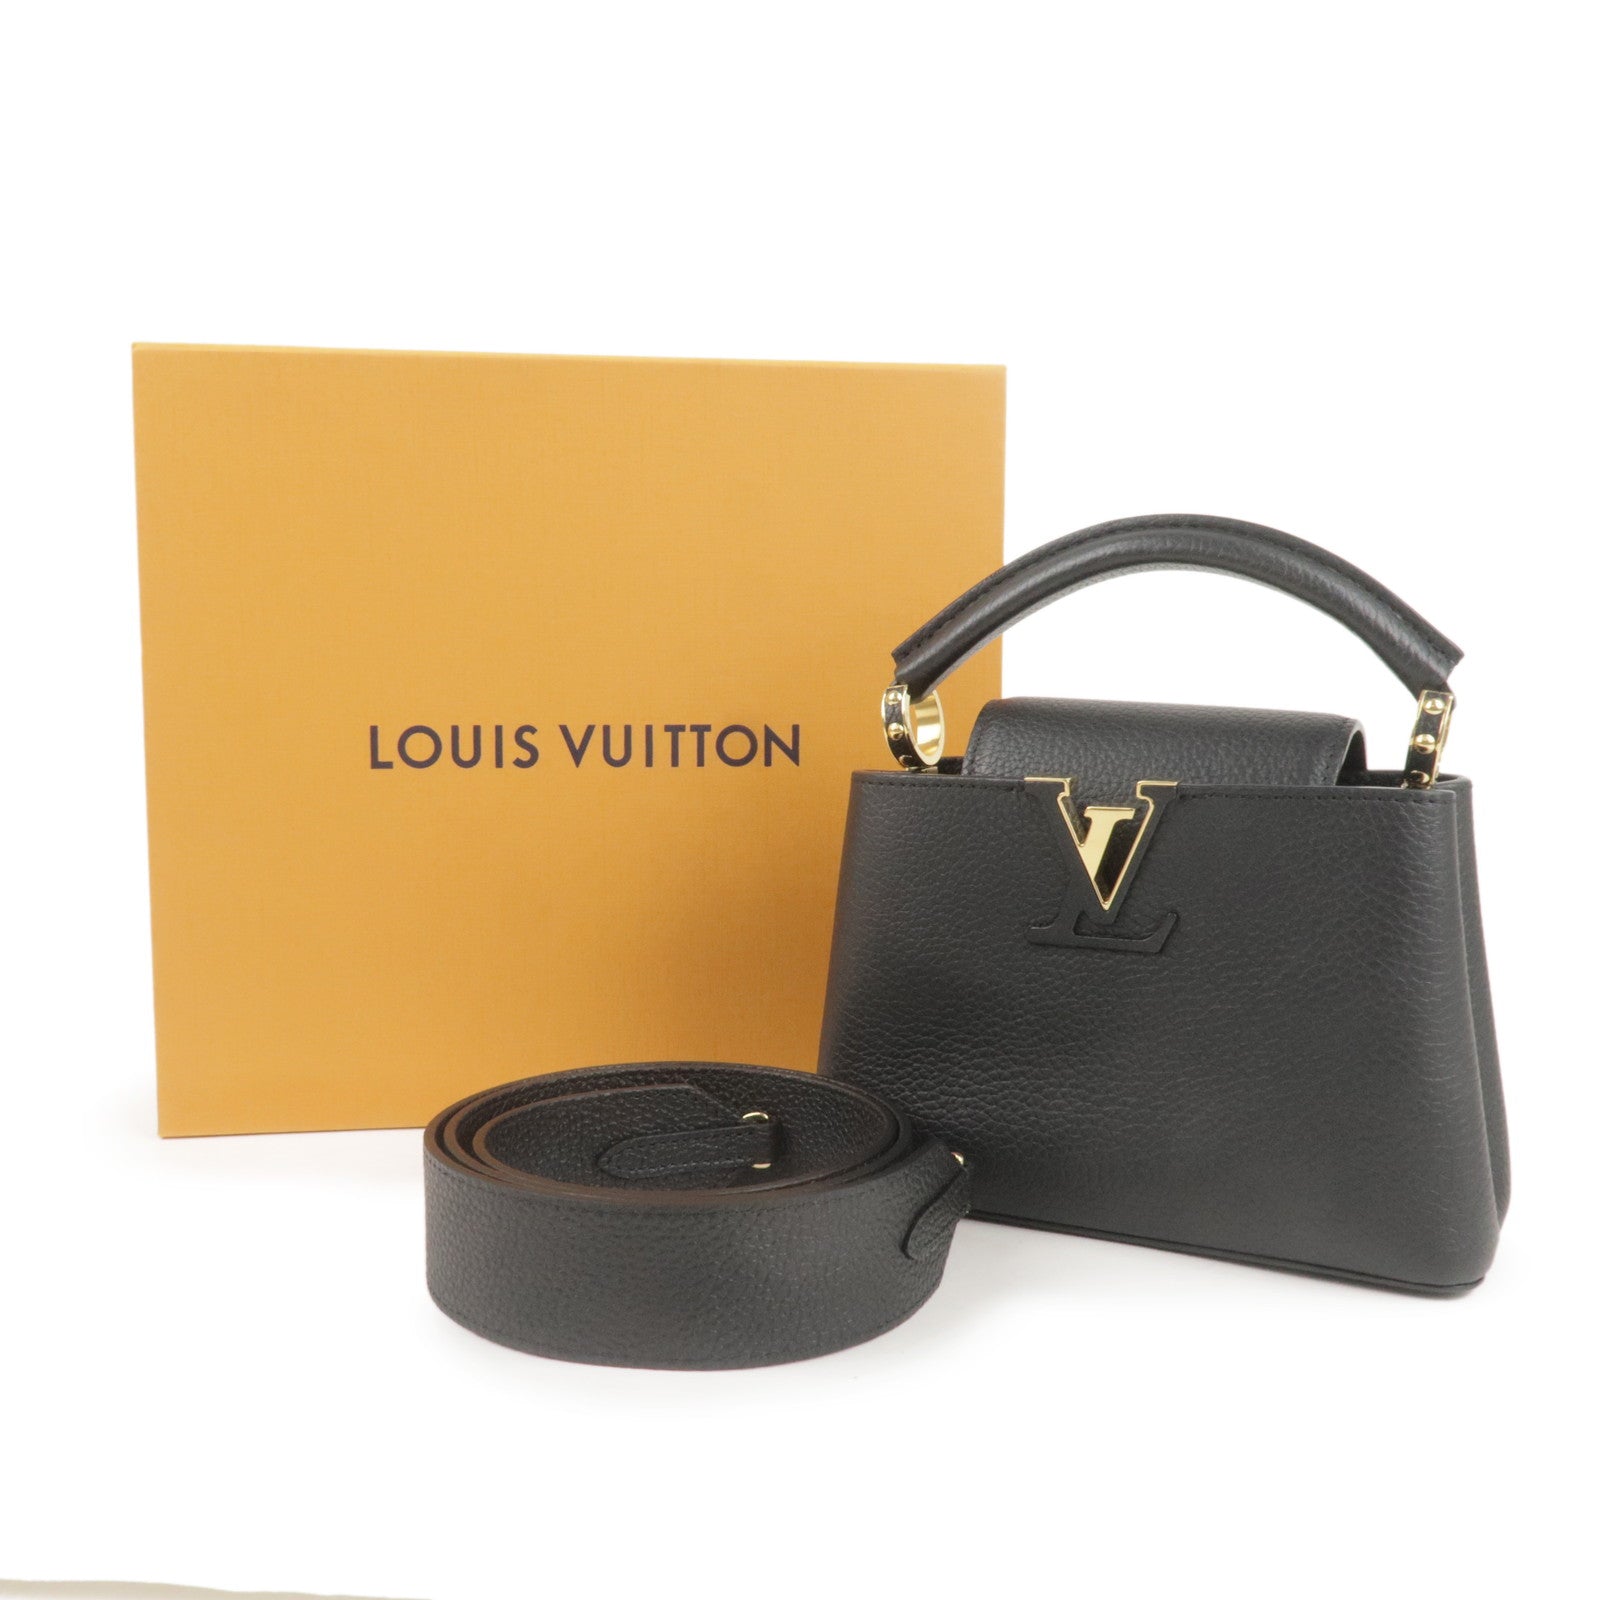 LOUIS VUITTON M56071 Capucine MINI 2way Shoulder Hand Bag